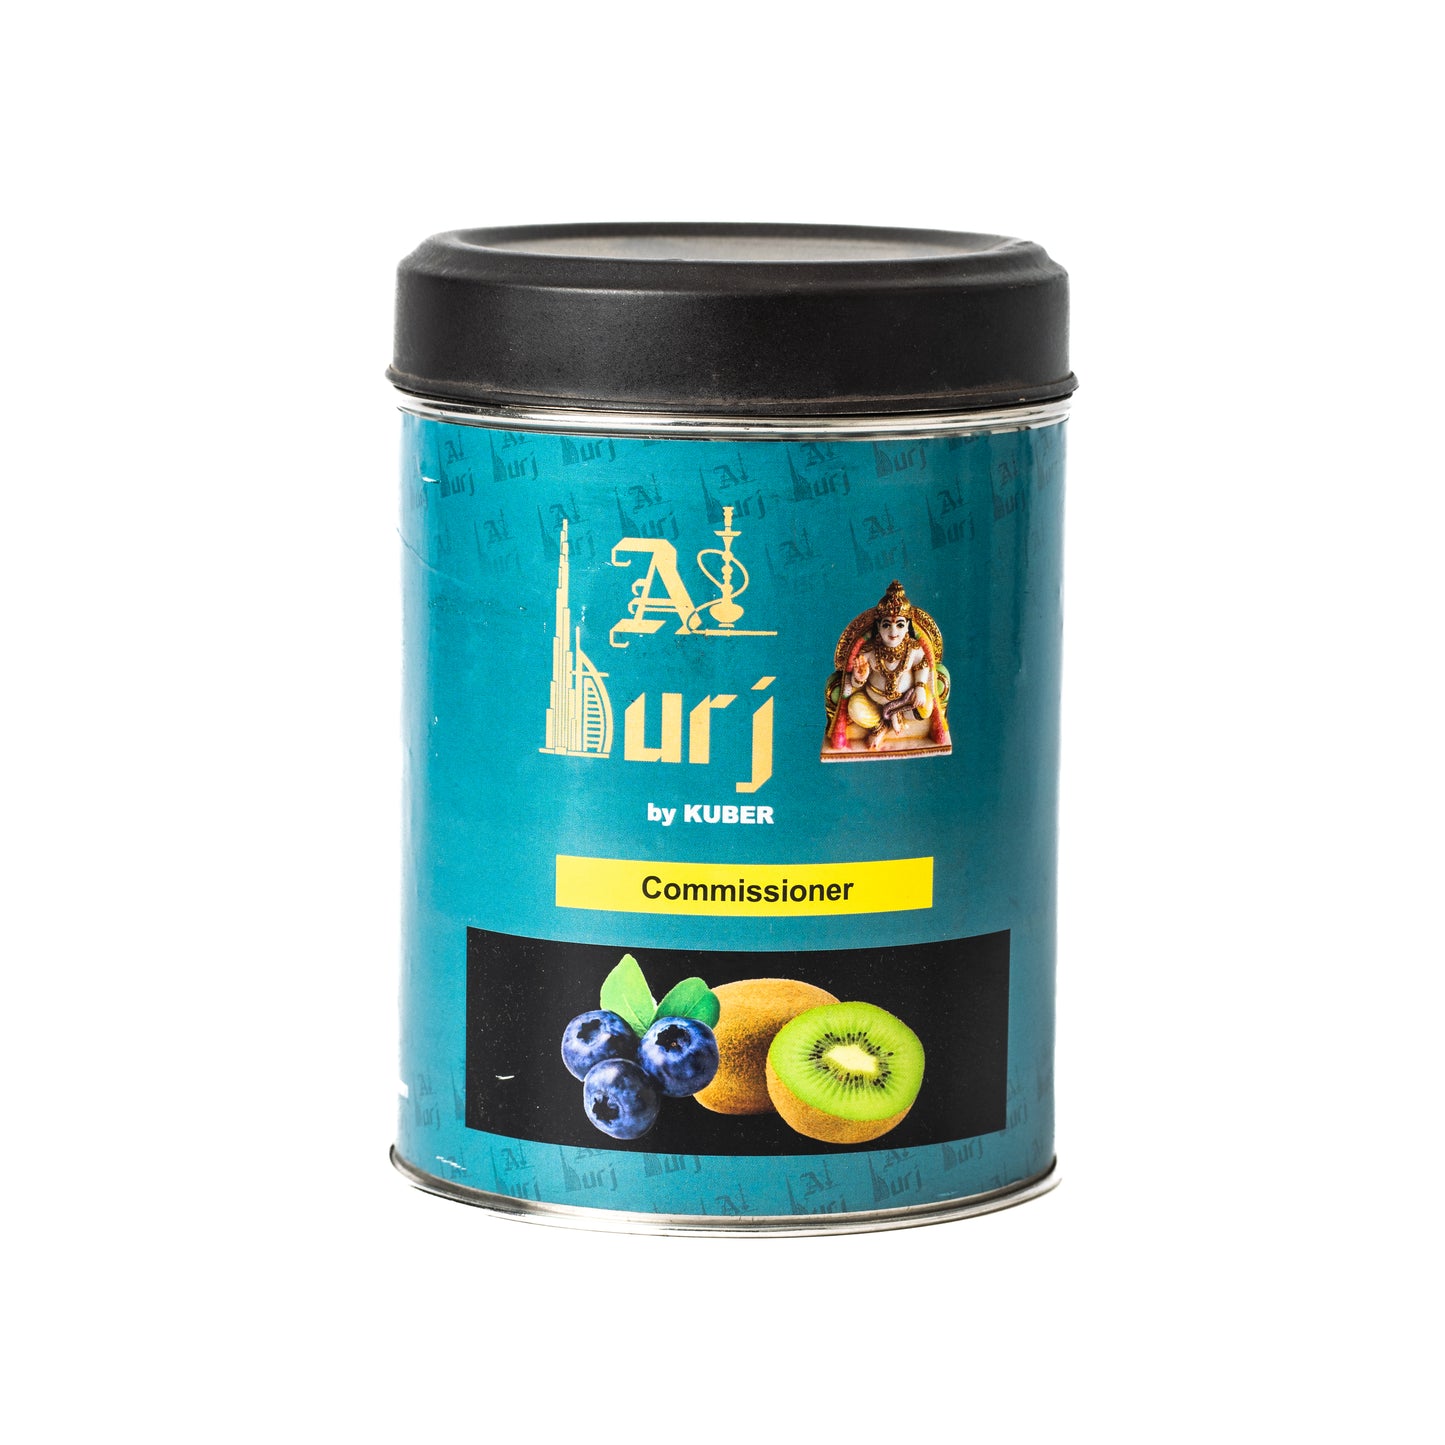 Al Burj Commissioner Hookah Flavor - 1 kg Tin Pack